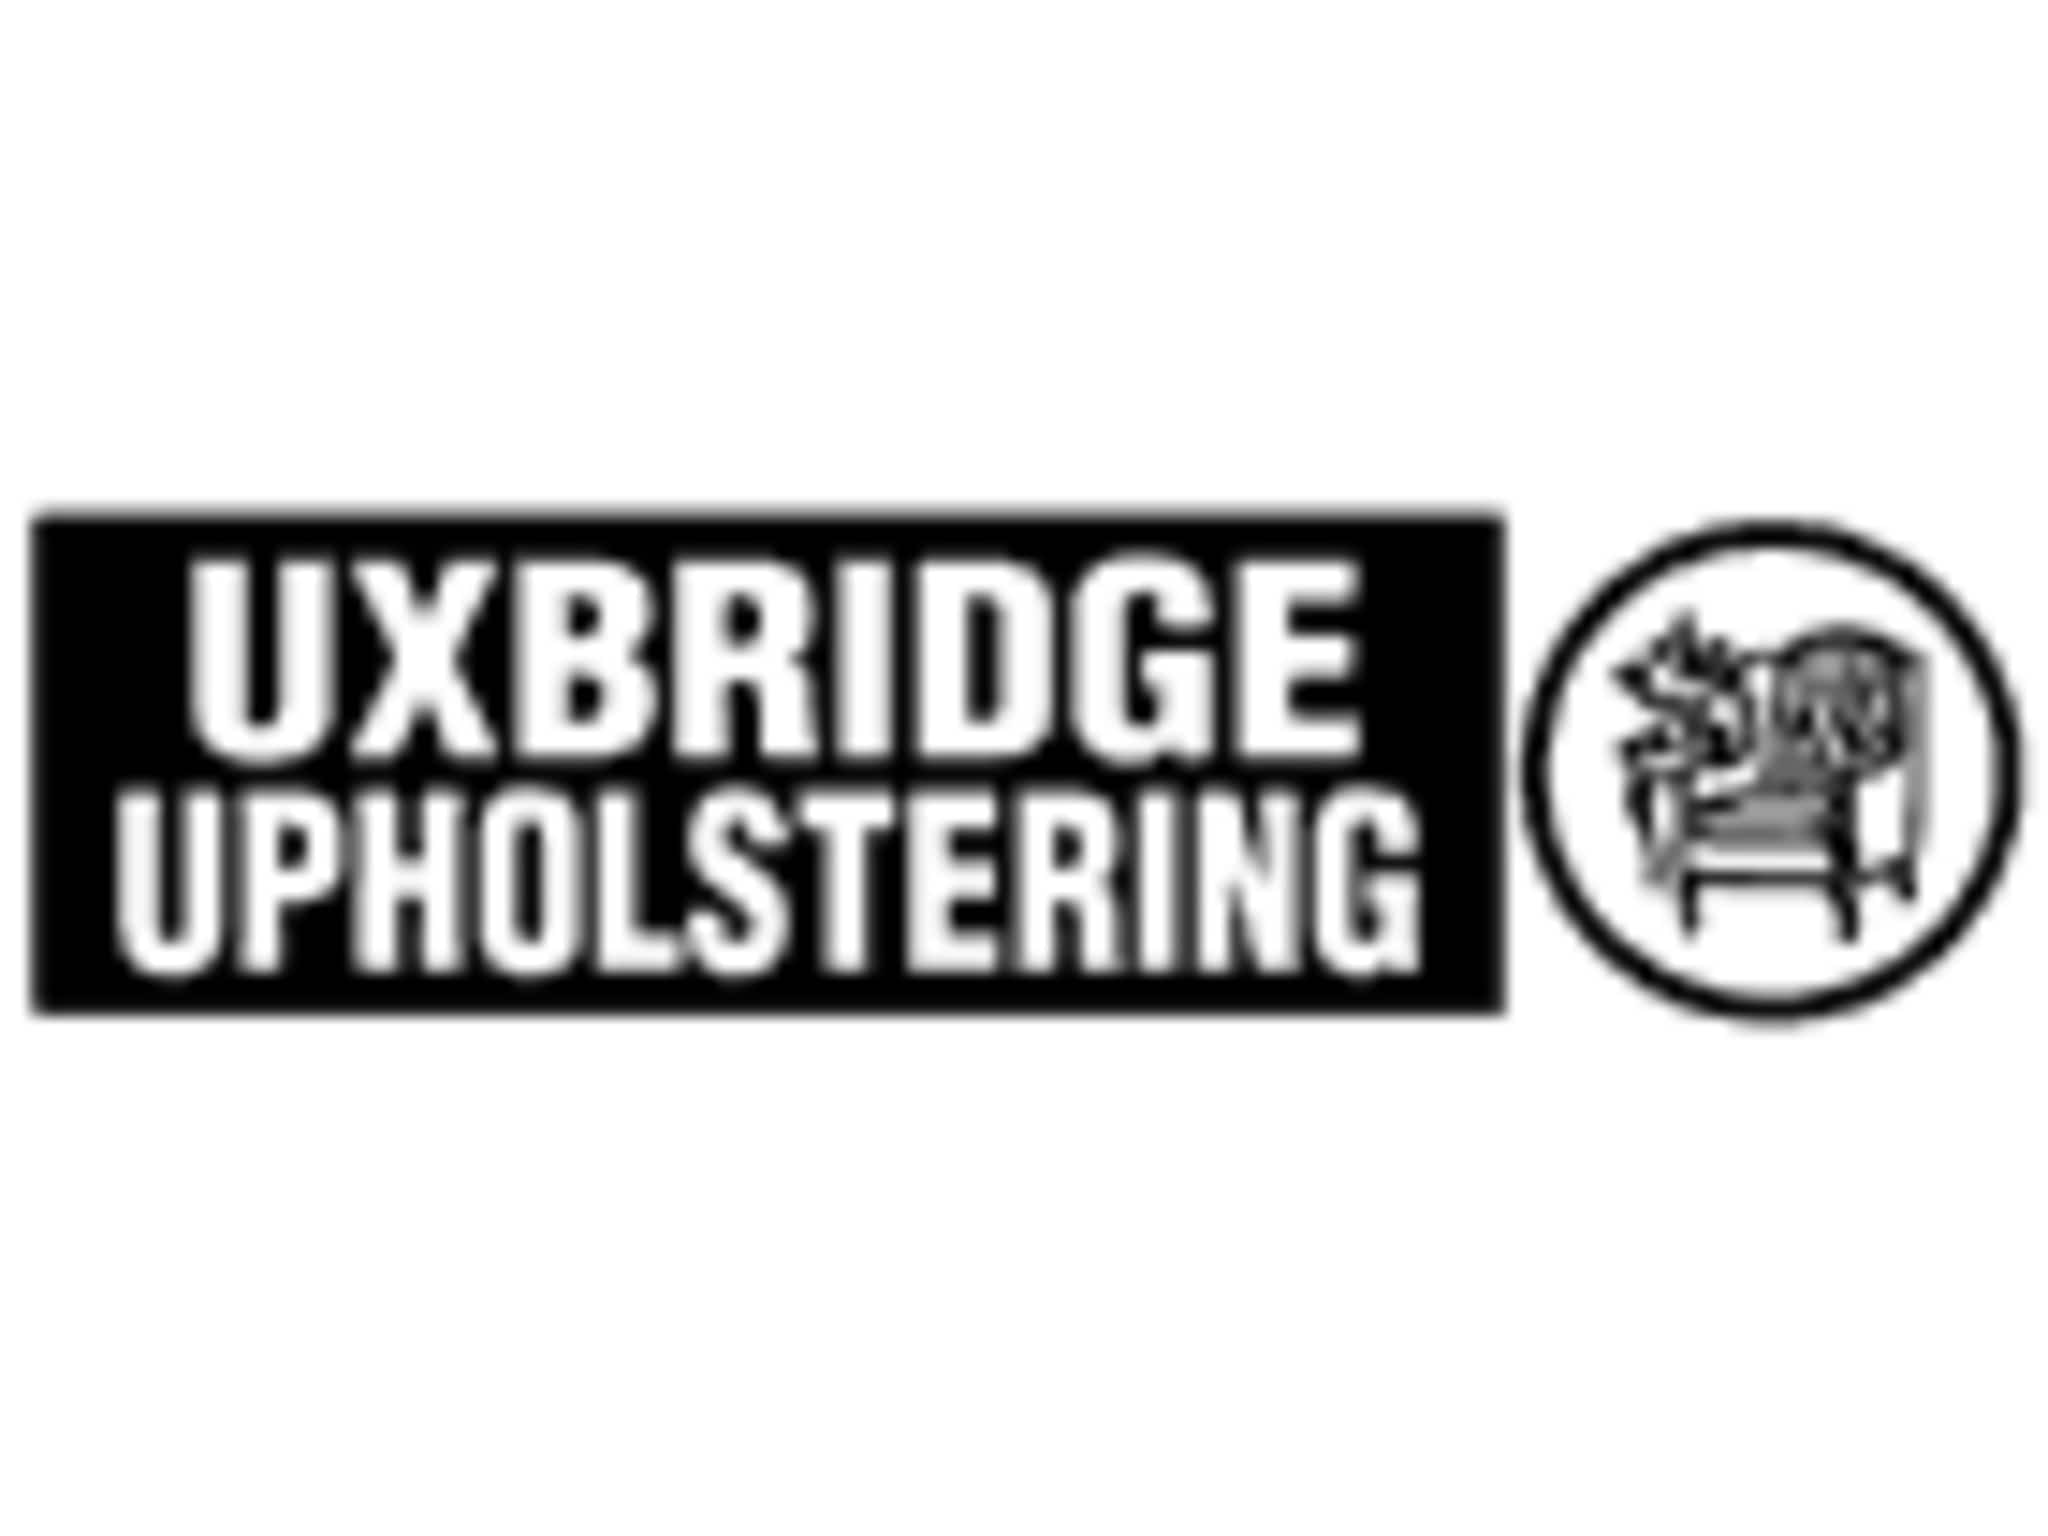 photo Uxbridge Custom Upholstery